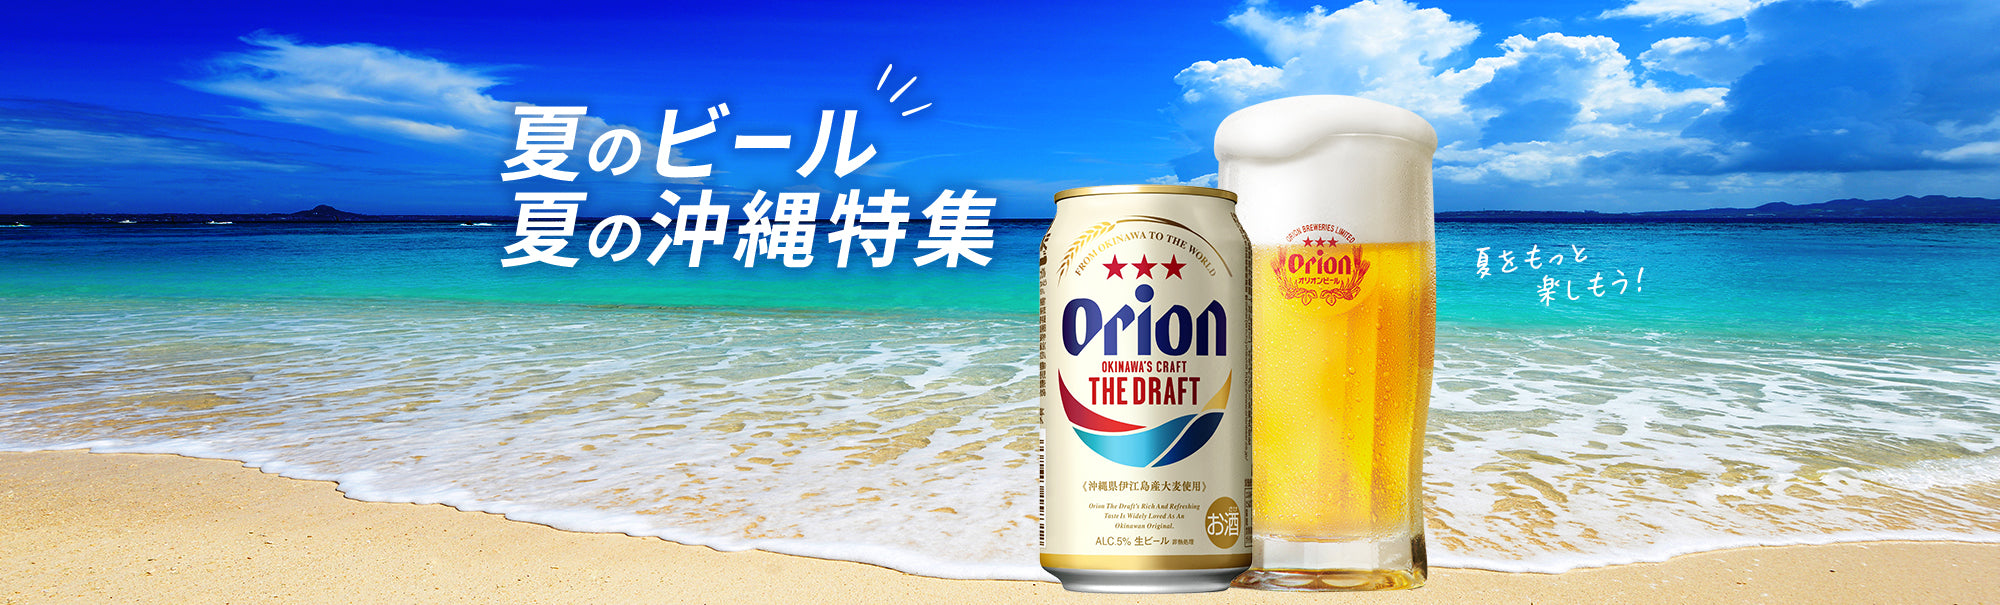 夏のビール、夏の沖縄特集